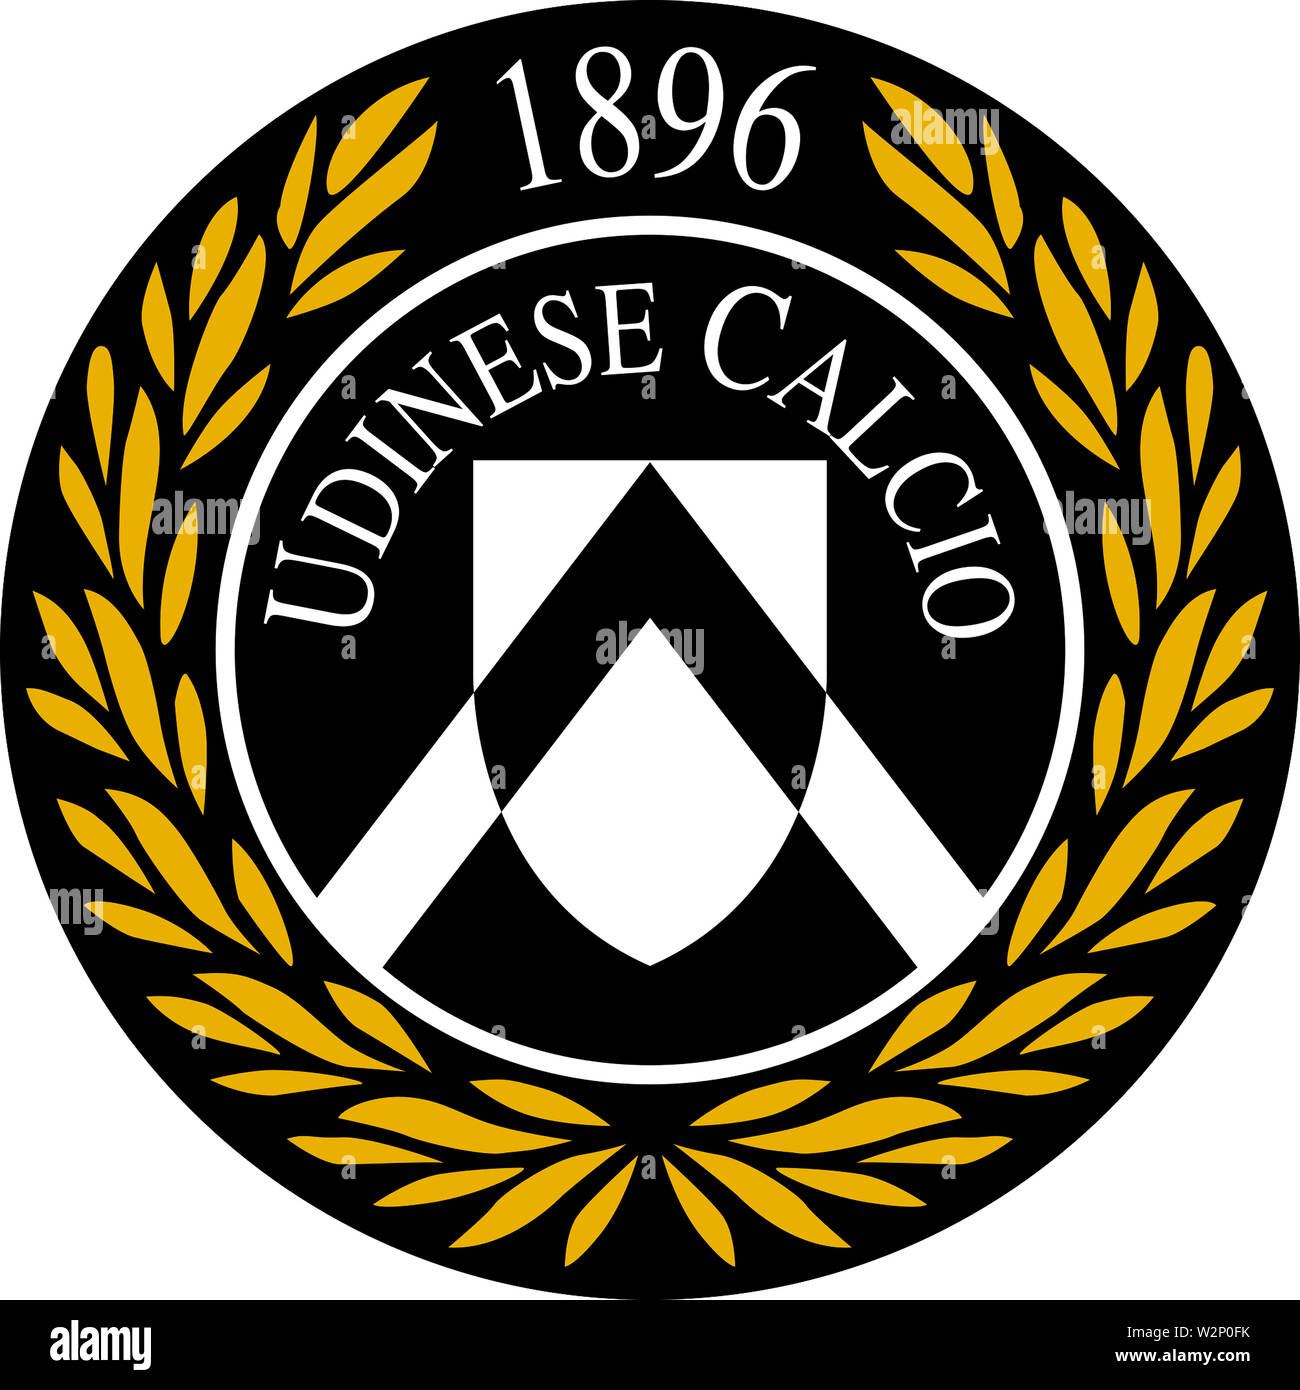 Il logo della squadra di calcio italiano Udinese Calcio - Italia. Foto Stock